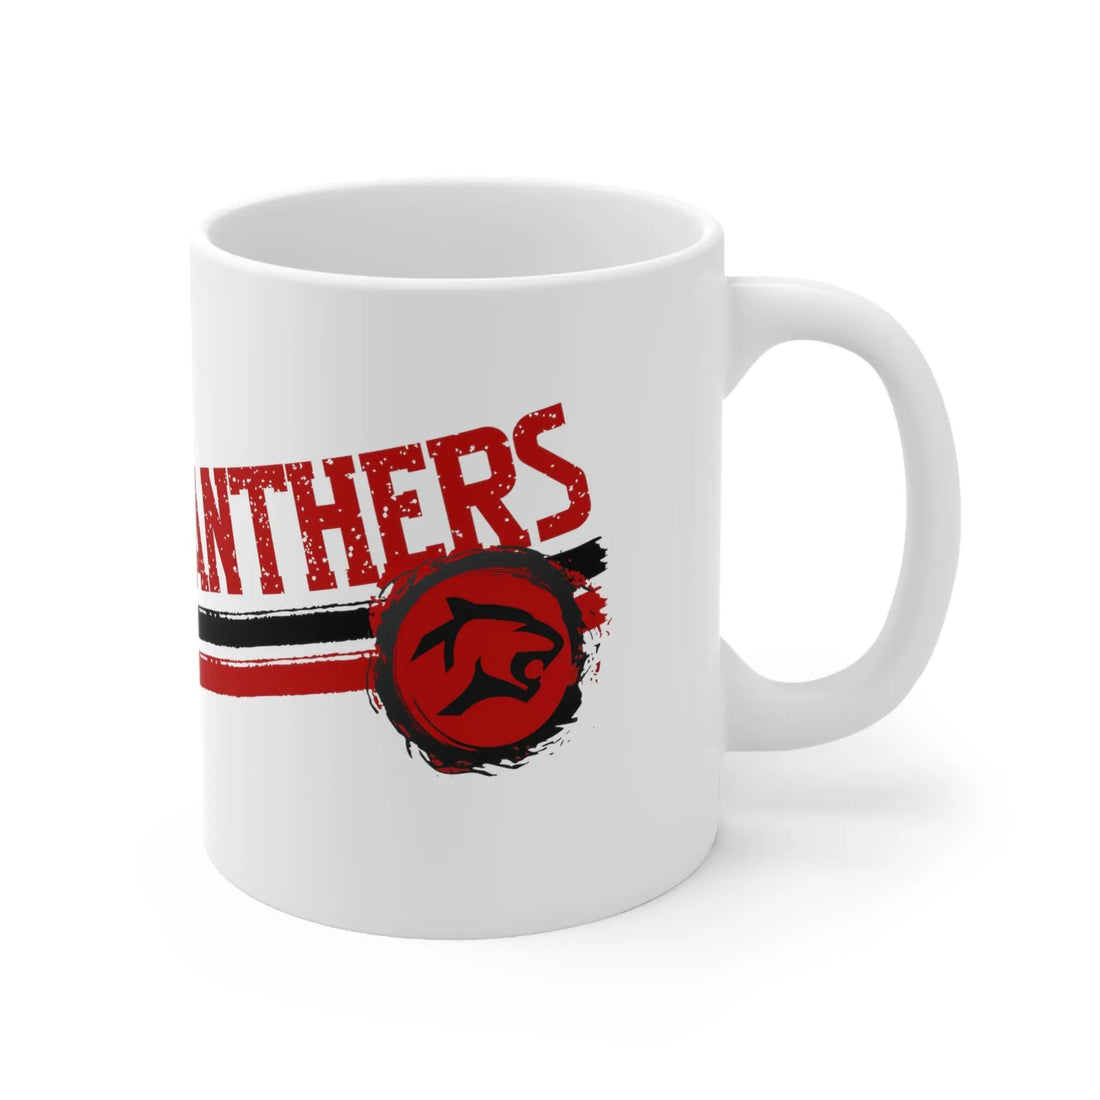 Panthers Bold Red Ceramic Mug 11oz - Mug - Positively Sassy - Panthers Bold Red Ceramic Mug 11oz